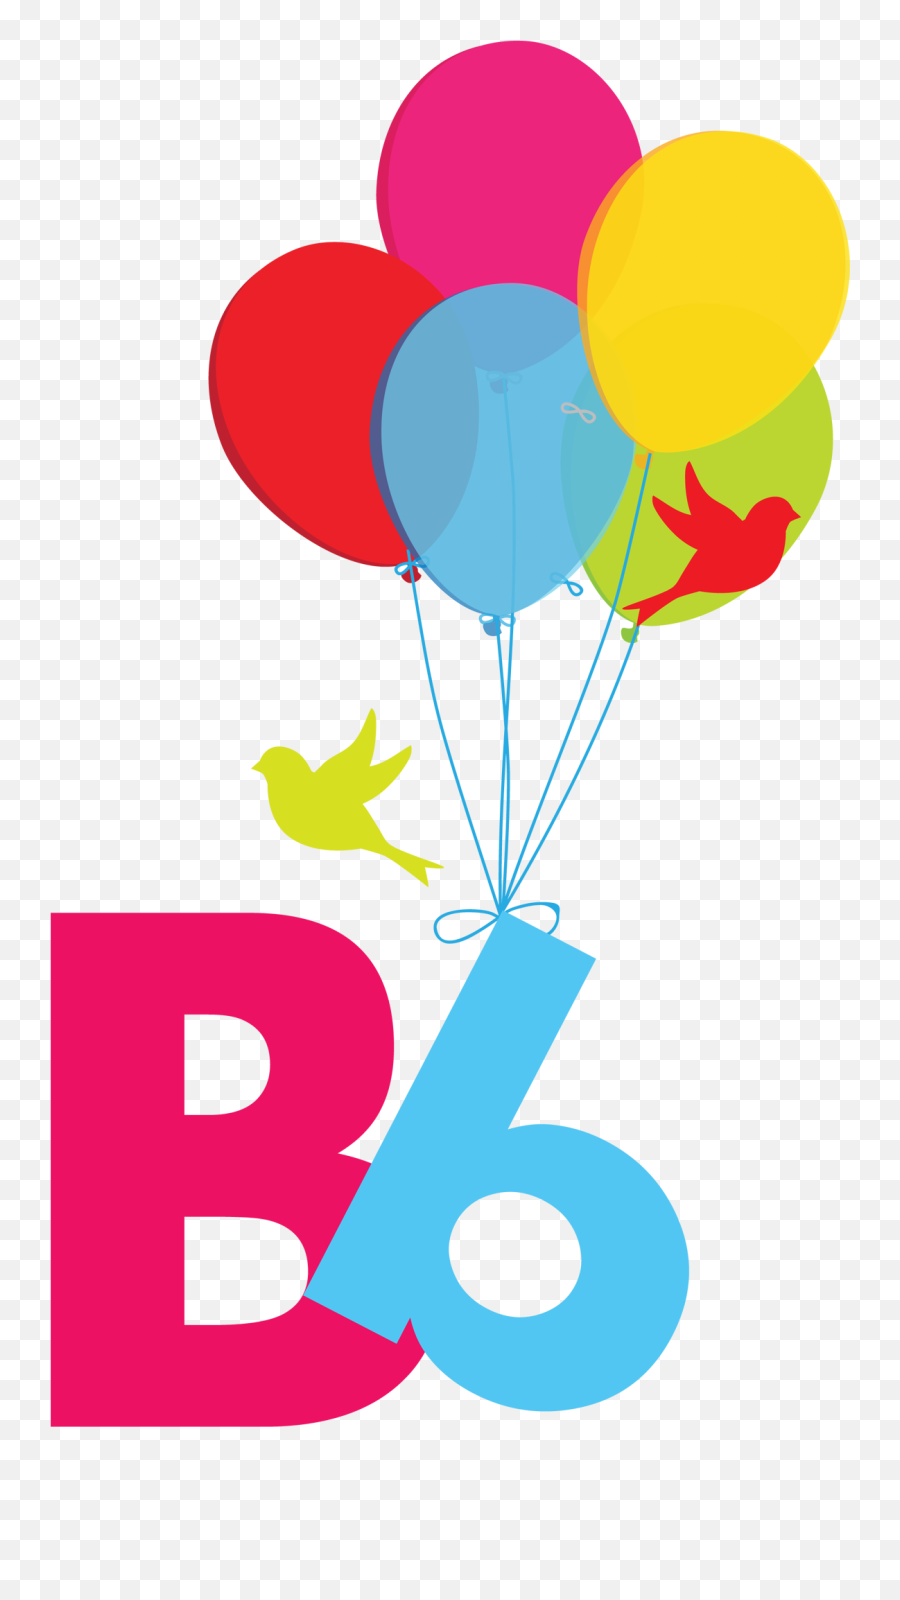 Clipart Alphabet Letters For Kids - Letter B Full Size Png Letter B For Kids,Letter B Png